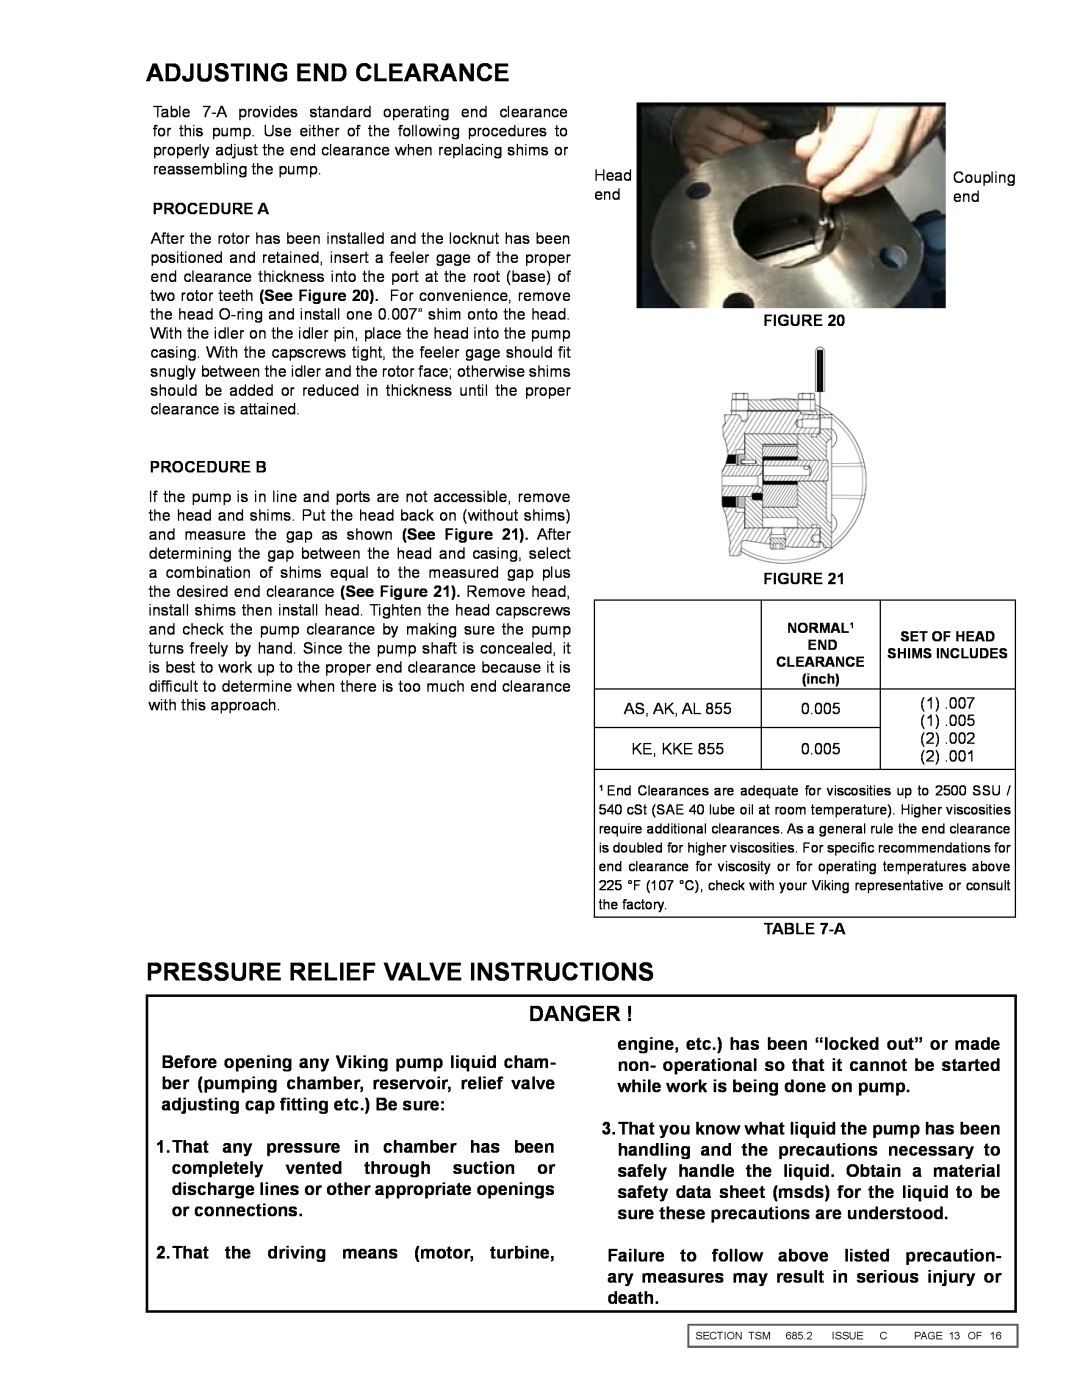 Viking 855 service manual Adjusting End Clearance, Pressure Relief Valve Instructions, Danger 